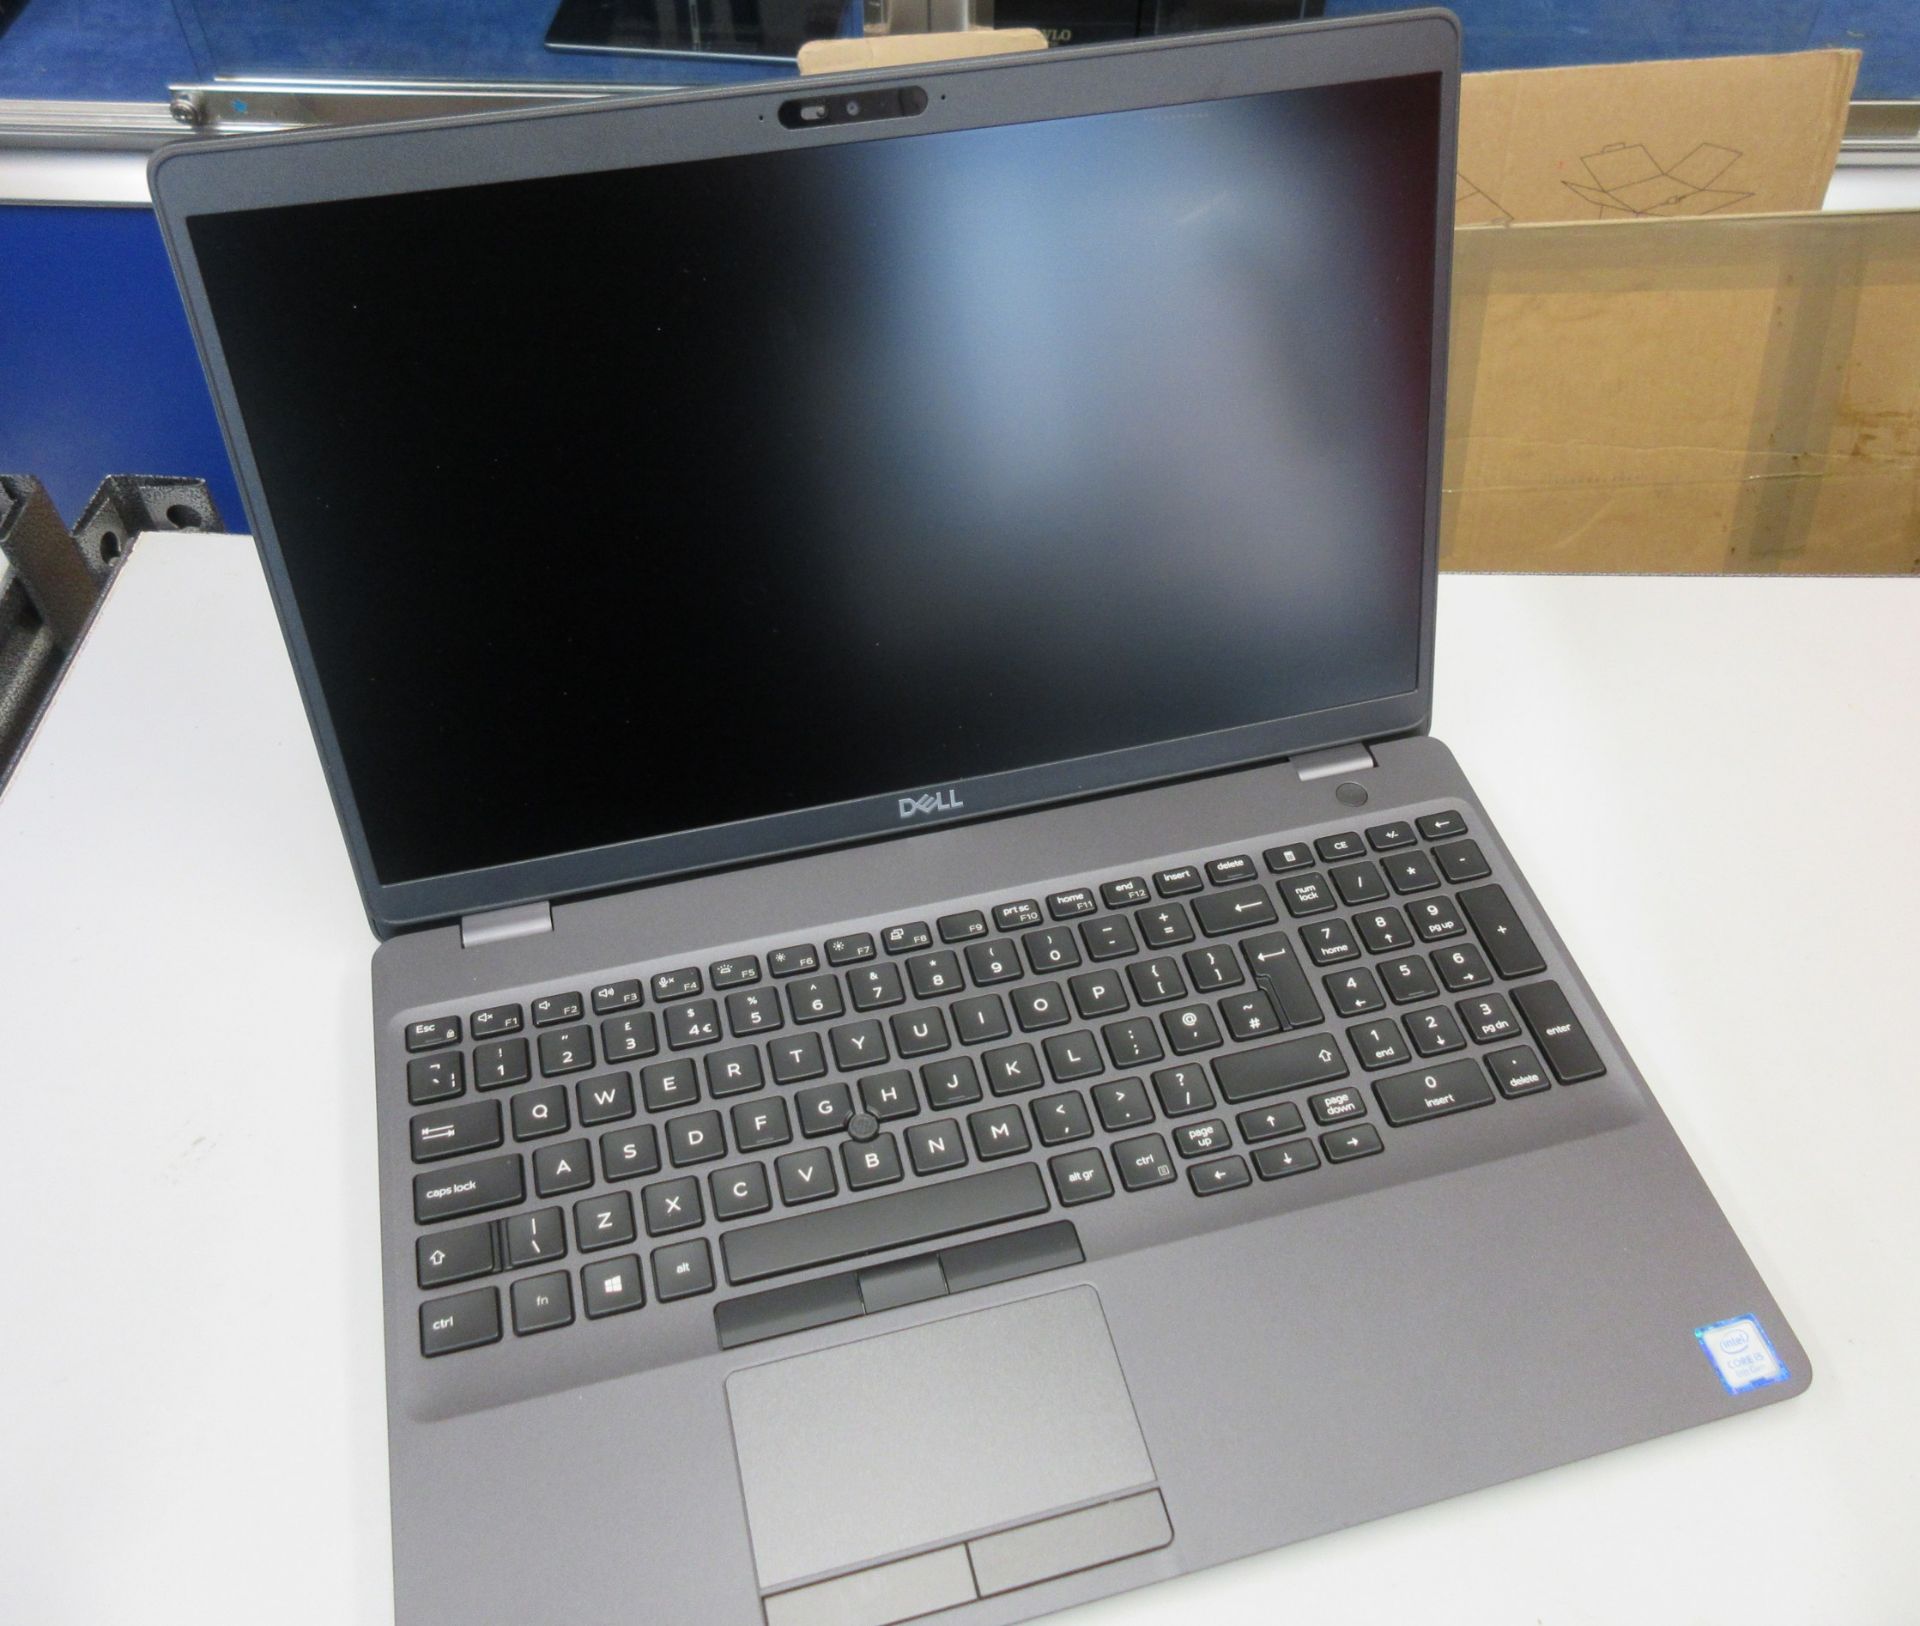 A nearly new Dell Latitude 5500 laptop. Intel Core i5 Processor. 8GB RAM, 256GB SSD. Windows 10.